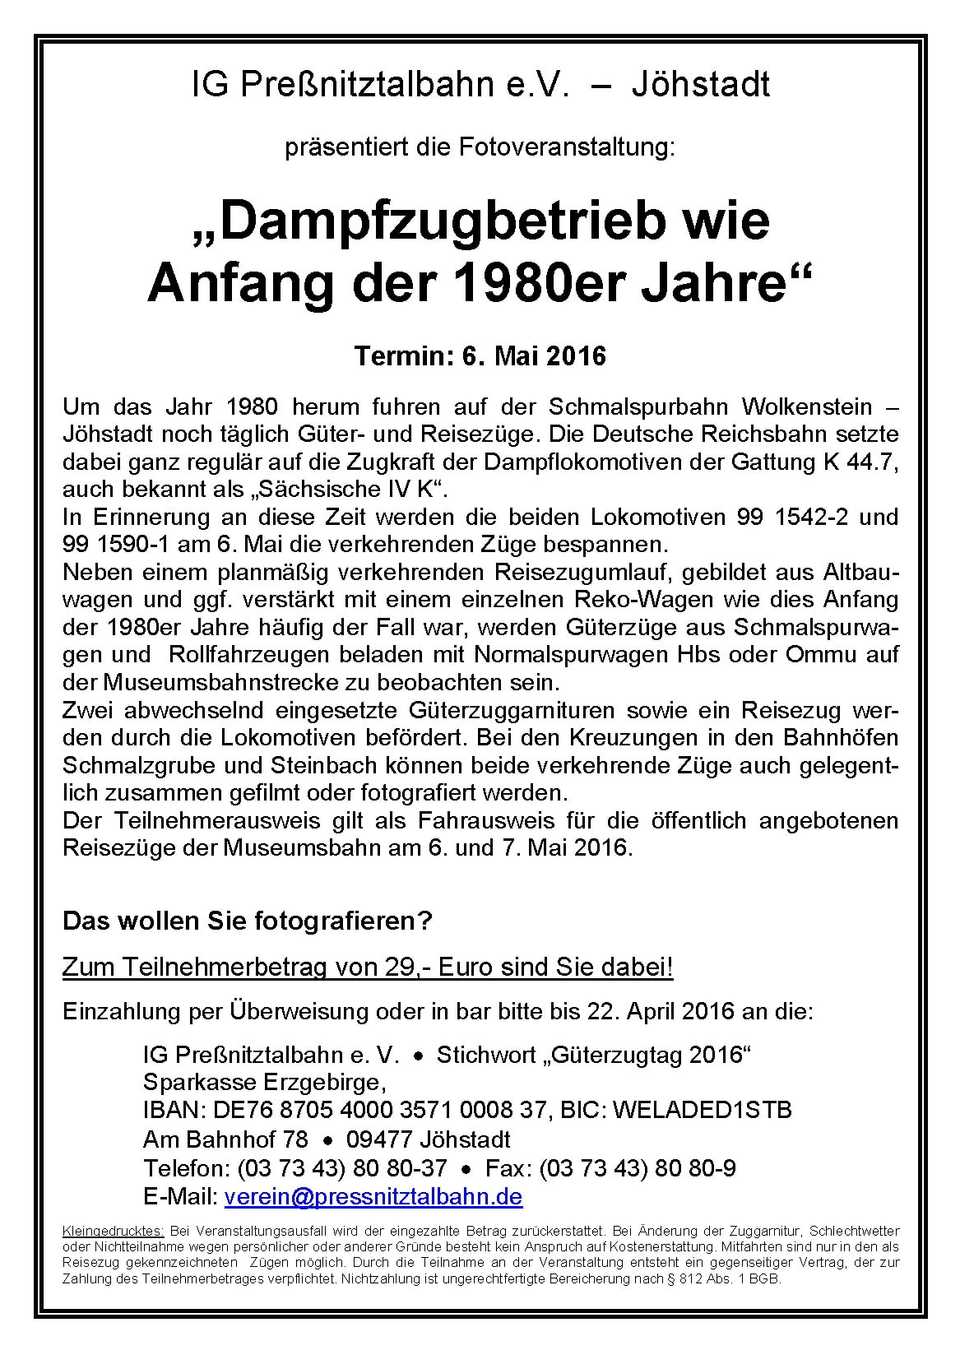 Veranstaltungsankündigung für „Dampfzugbetrieb wie Anfang der 1980er Jahre“ am 6. Mai 2016.